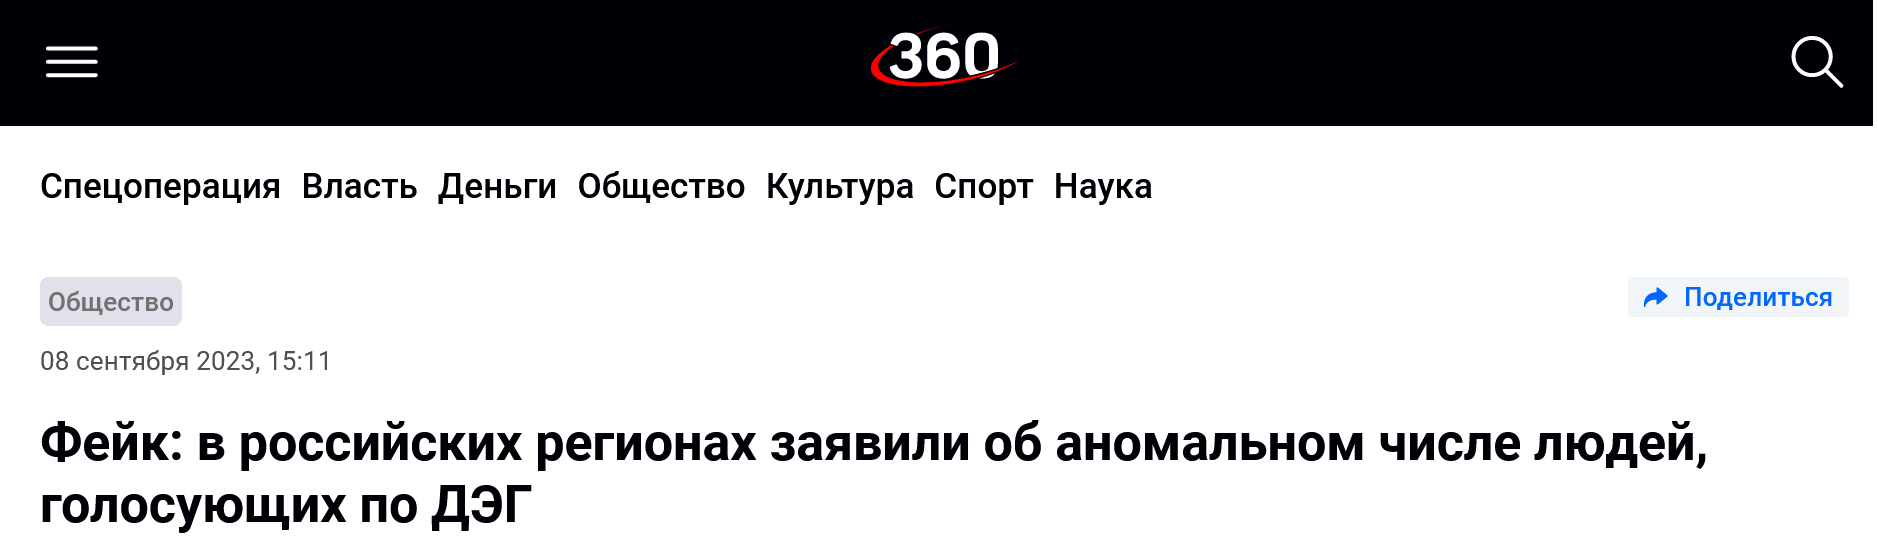 Screenshot 2023 09 08 At 16 14 47 Fejk V Rossijskih Regionah Zajavili Ob Anomalnom Chisle Ljudej Golosujushhih Po Djeg 360 